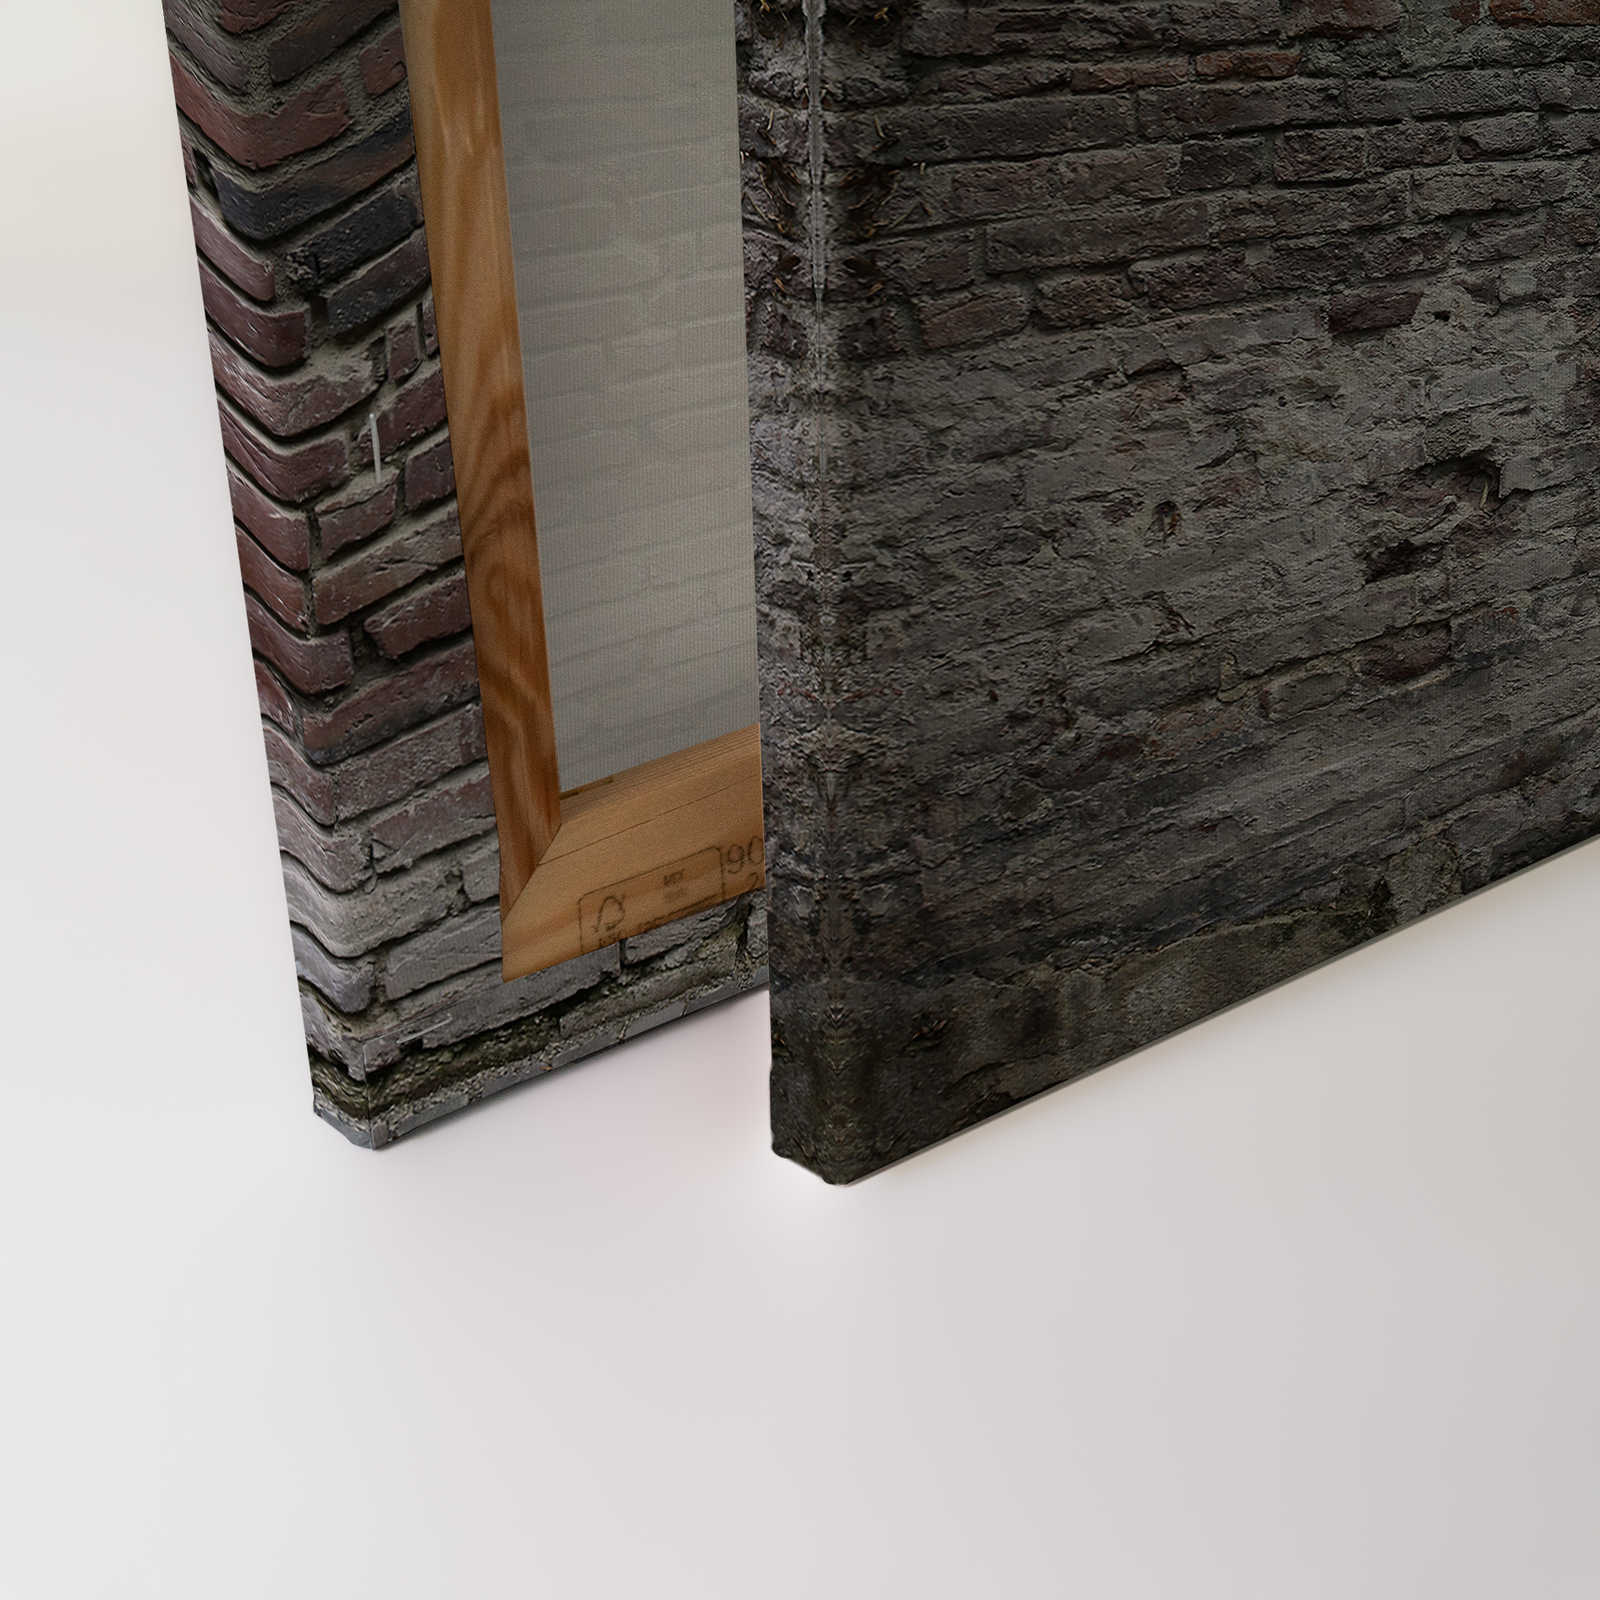             Mur de briques Toile 3D aspect rustique - 1,20 m x 0,80 m
        